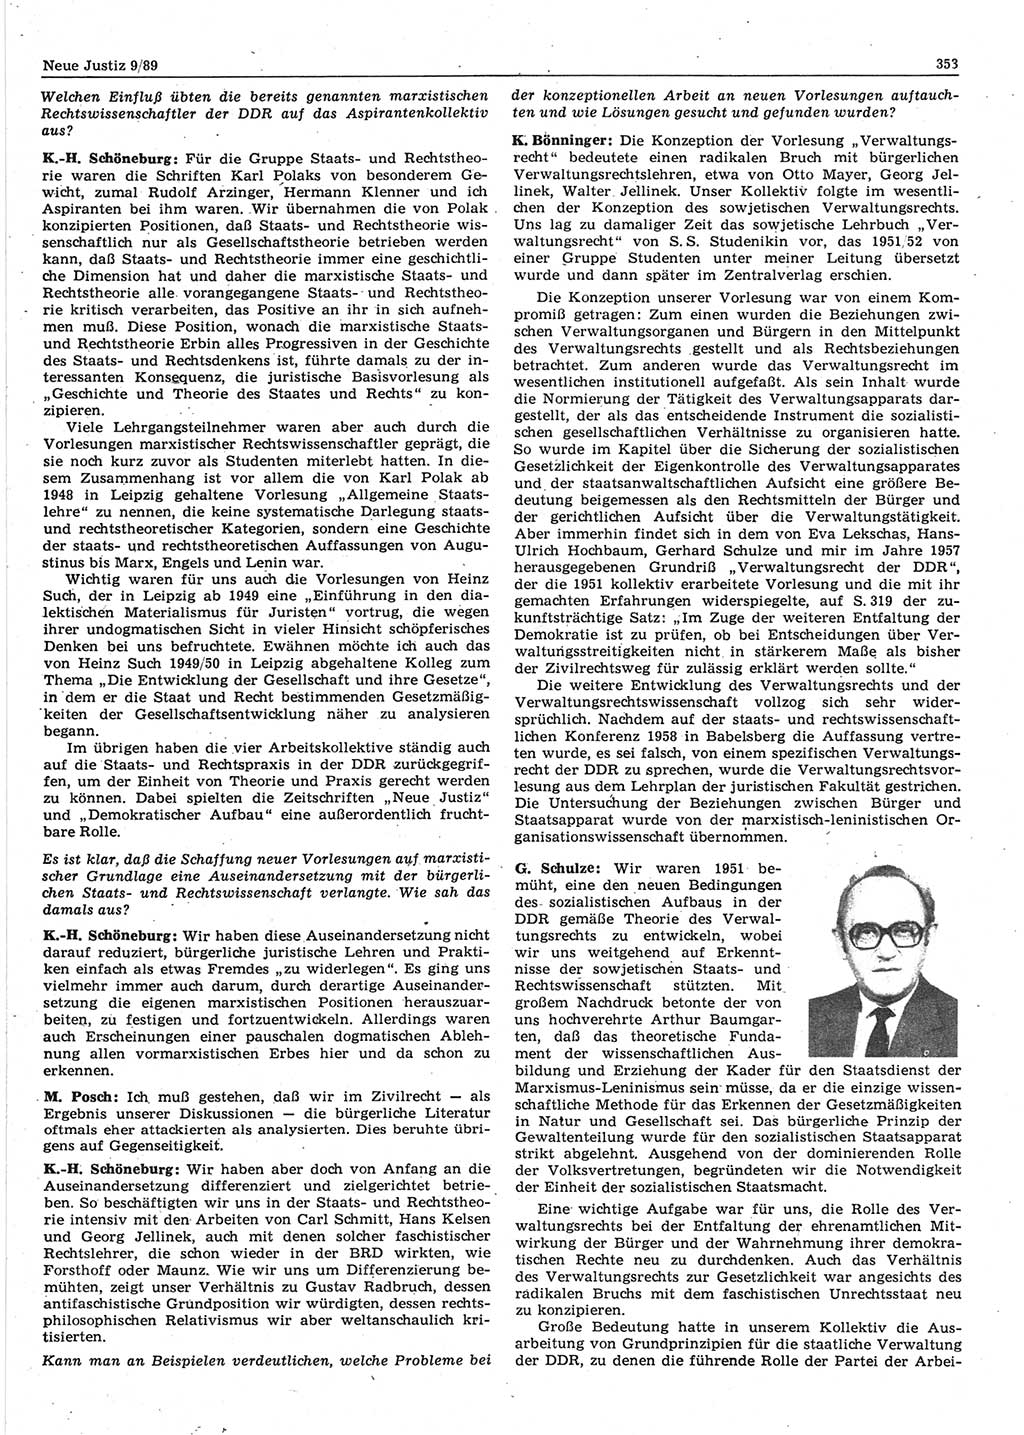 Neue Justiz (NJ), Zeitschrift für sozialistisches Recht und Gesetzlichkeit [Deutsche Demokratische Republik (DDR)], 43. Jahrgang 1989, Seite 353 (NJ DDR 1989, S. 353)